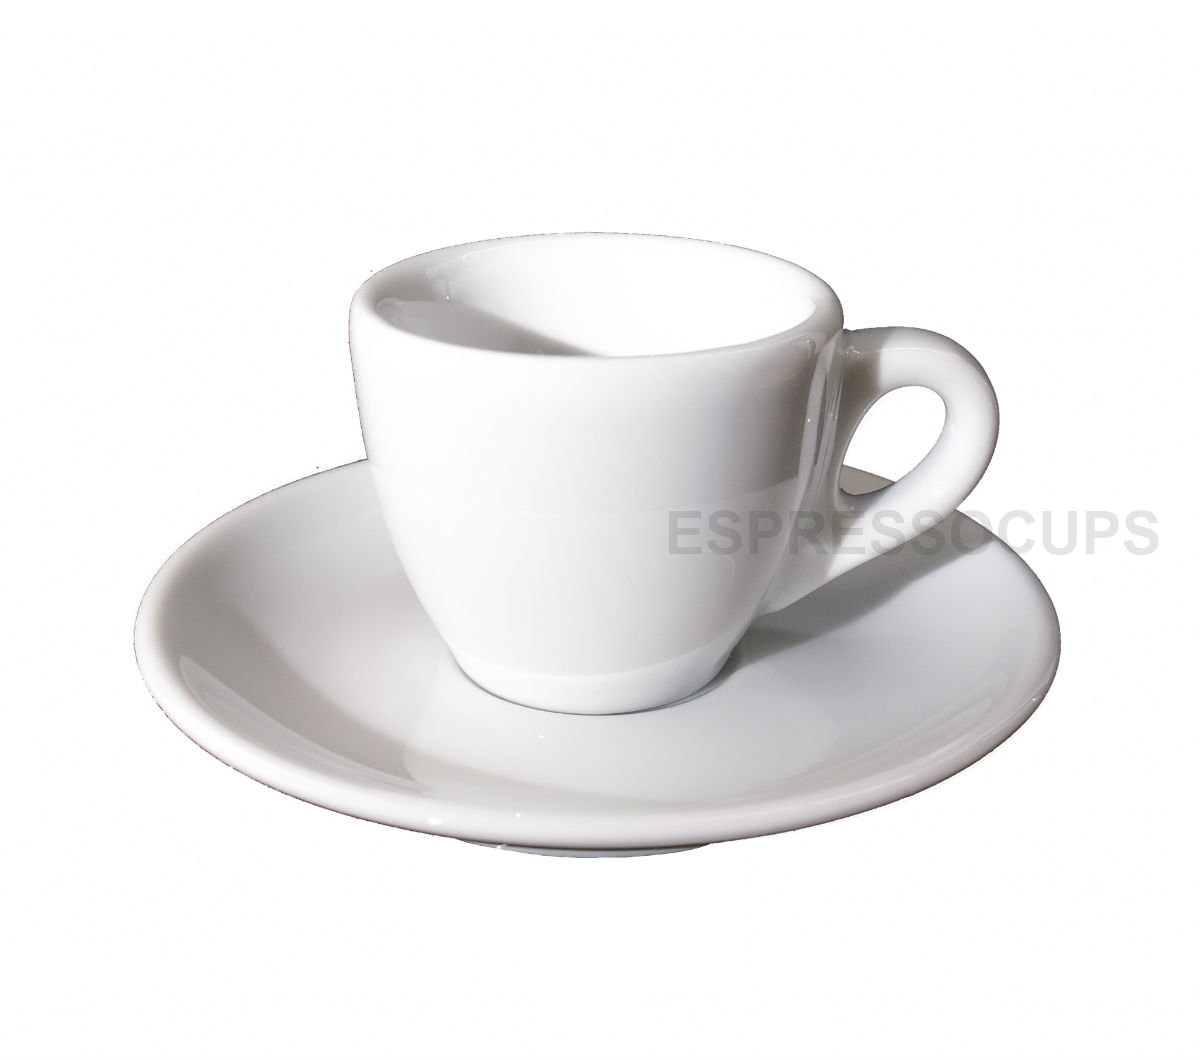 "PALERMO" Espresso Cups 55ml